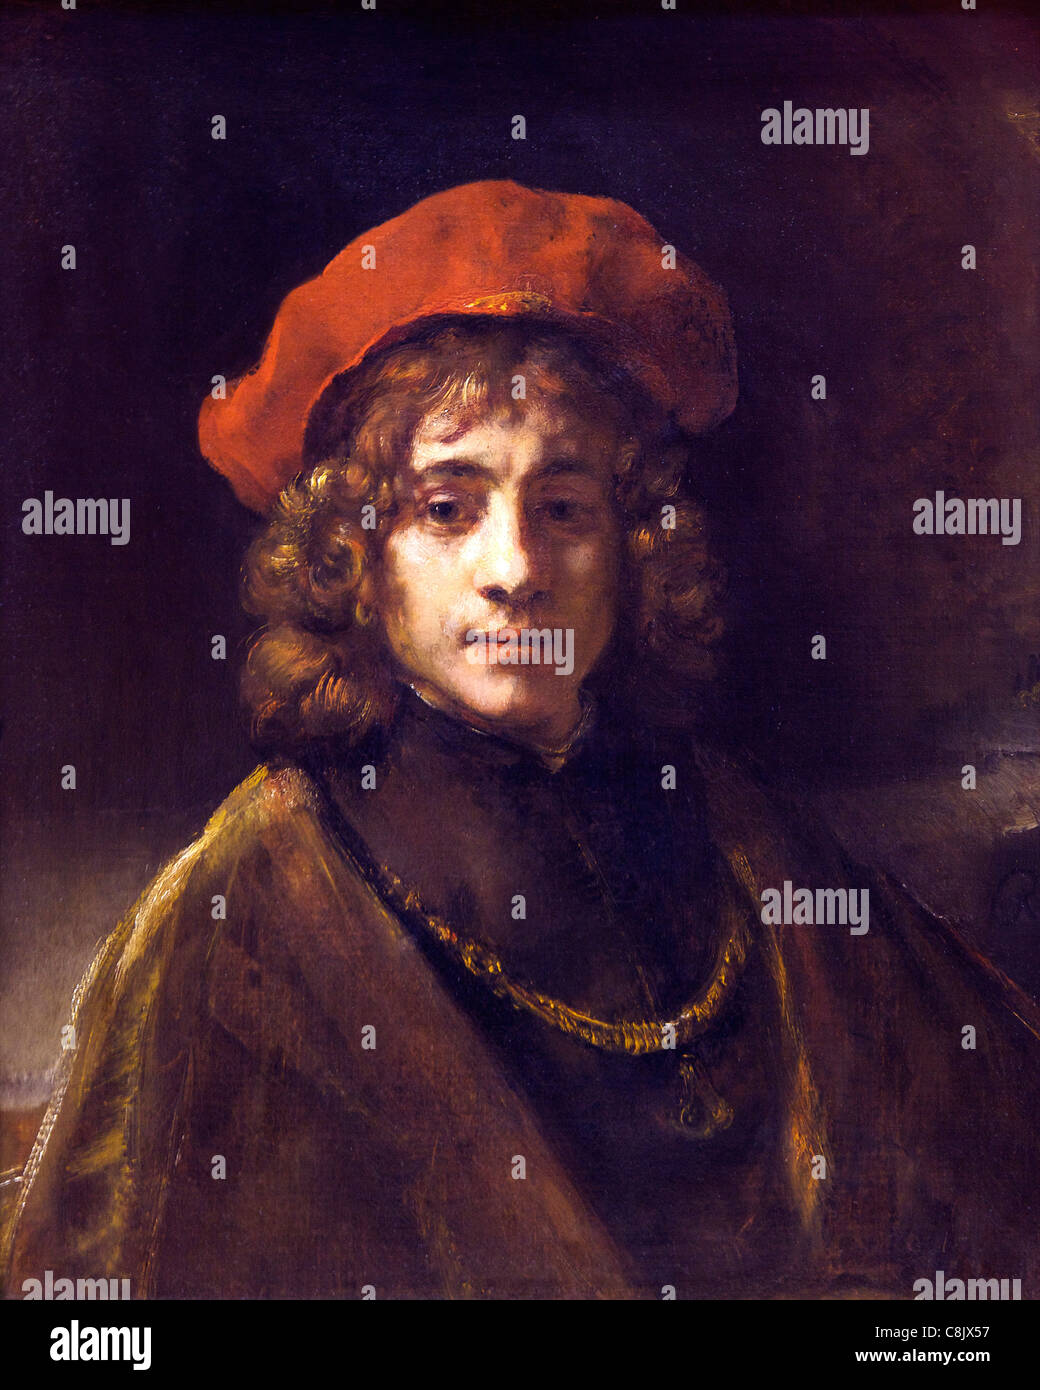 Titus, le Fils de l'artiste, de Rembrandt, 1657, Wallace Collection, Londres, Angleterre, Royaume-Uni, Royaume-Uni, GO, en Grande-Bretagne, en Banque D'Images